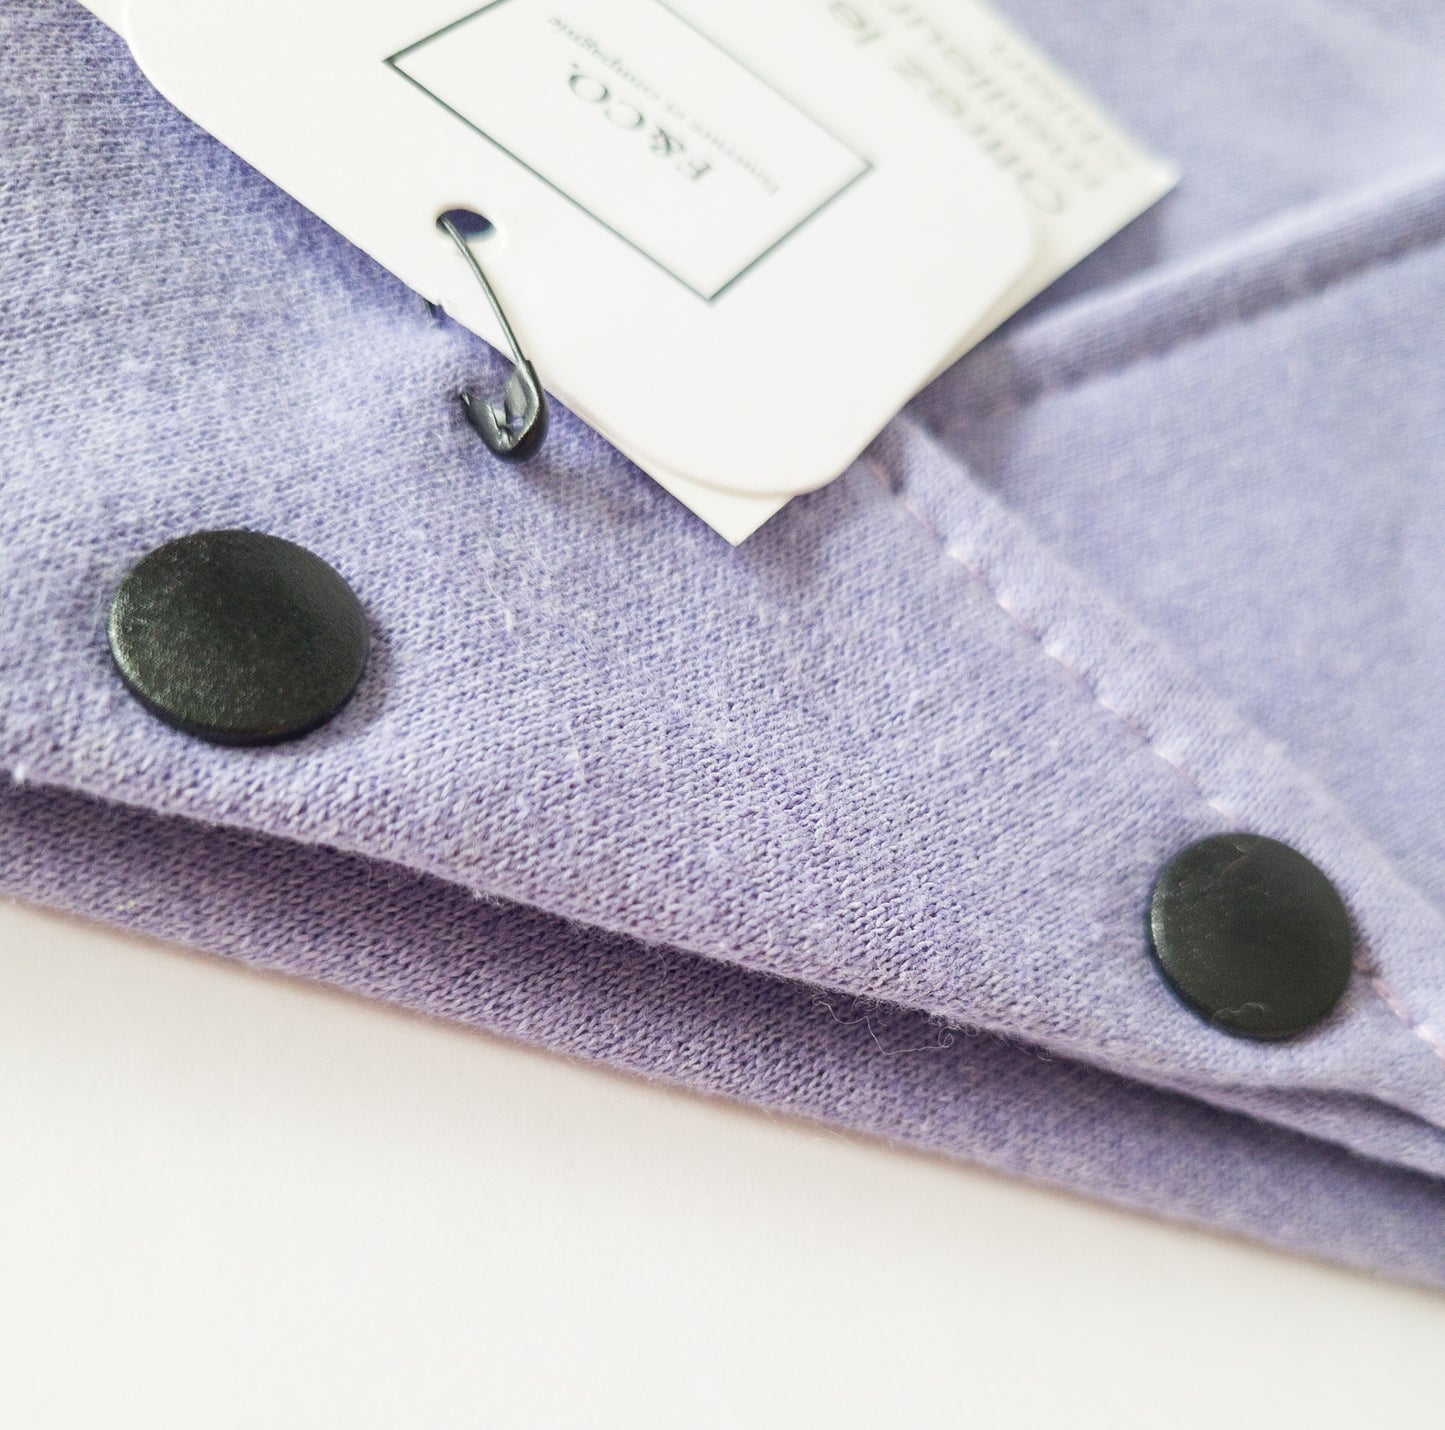 Grosplan sur bouton pression noir mat sur bandanas de coton ouaté violet bleuté.